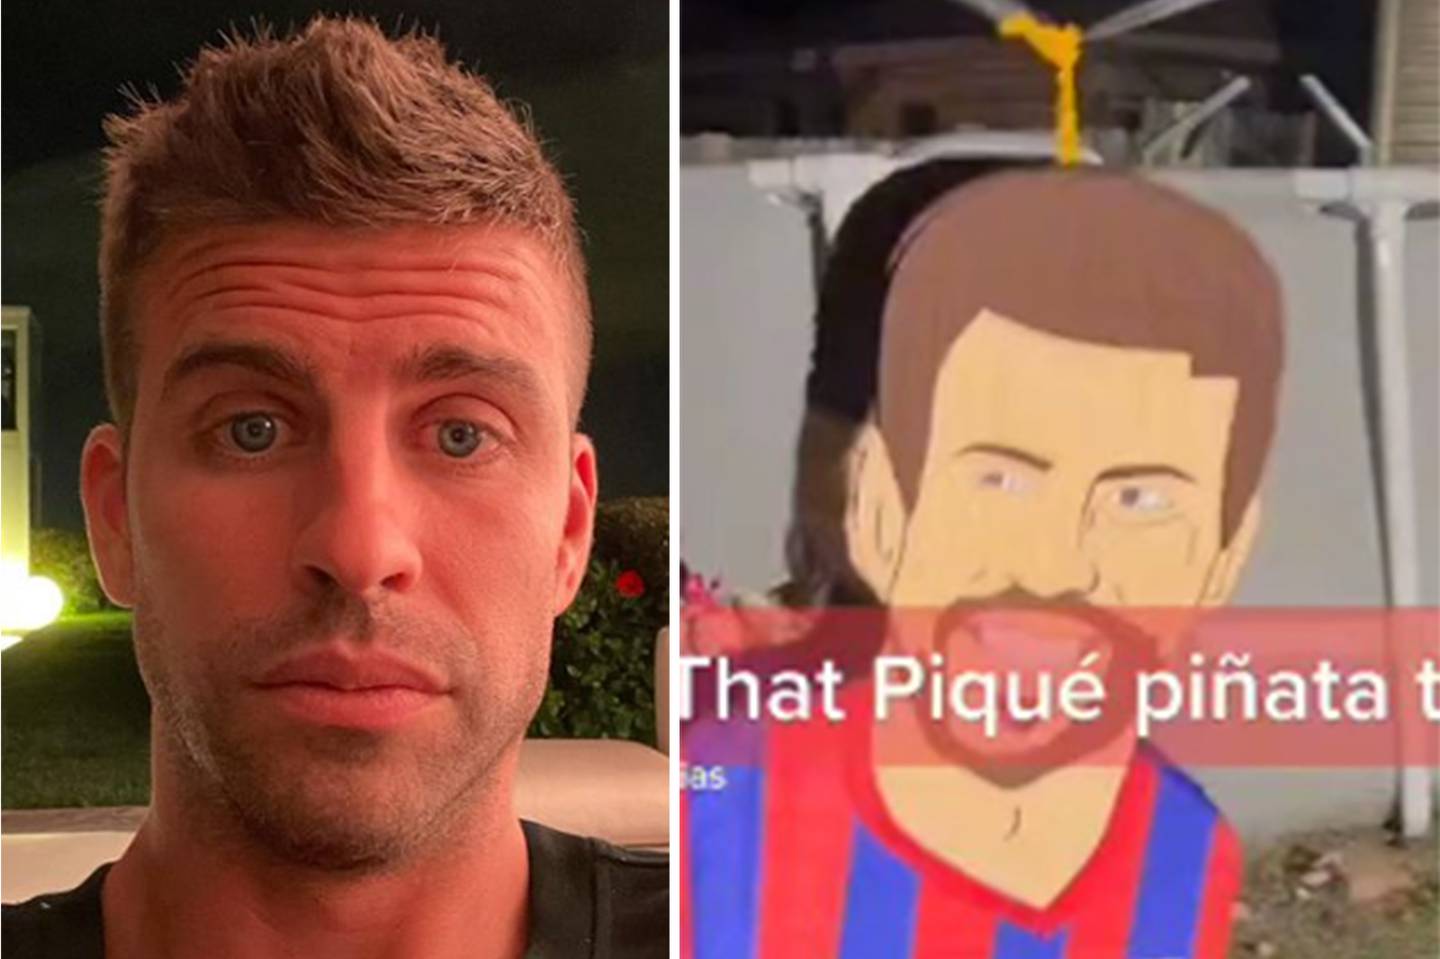 La piñata de Piqué se volvió tendencia en las redes sociales.